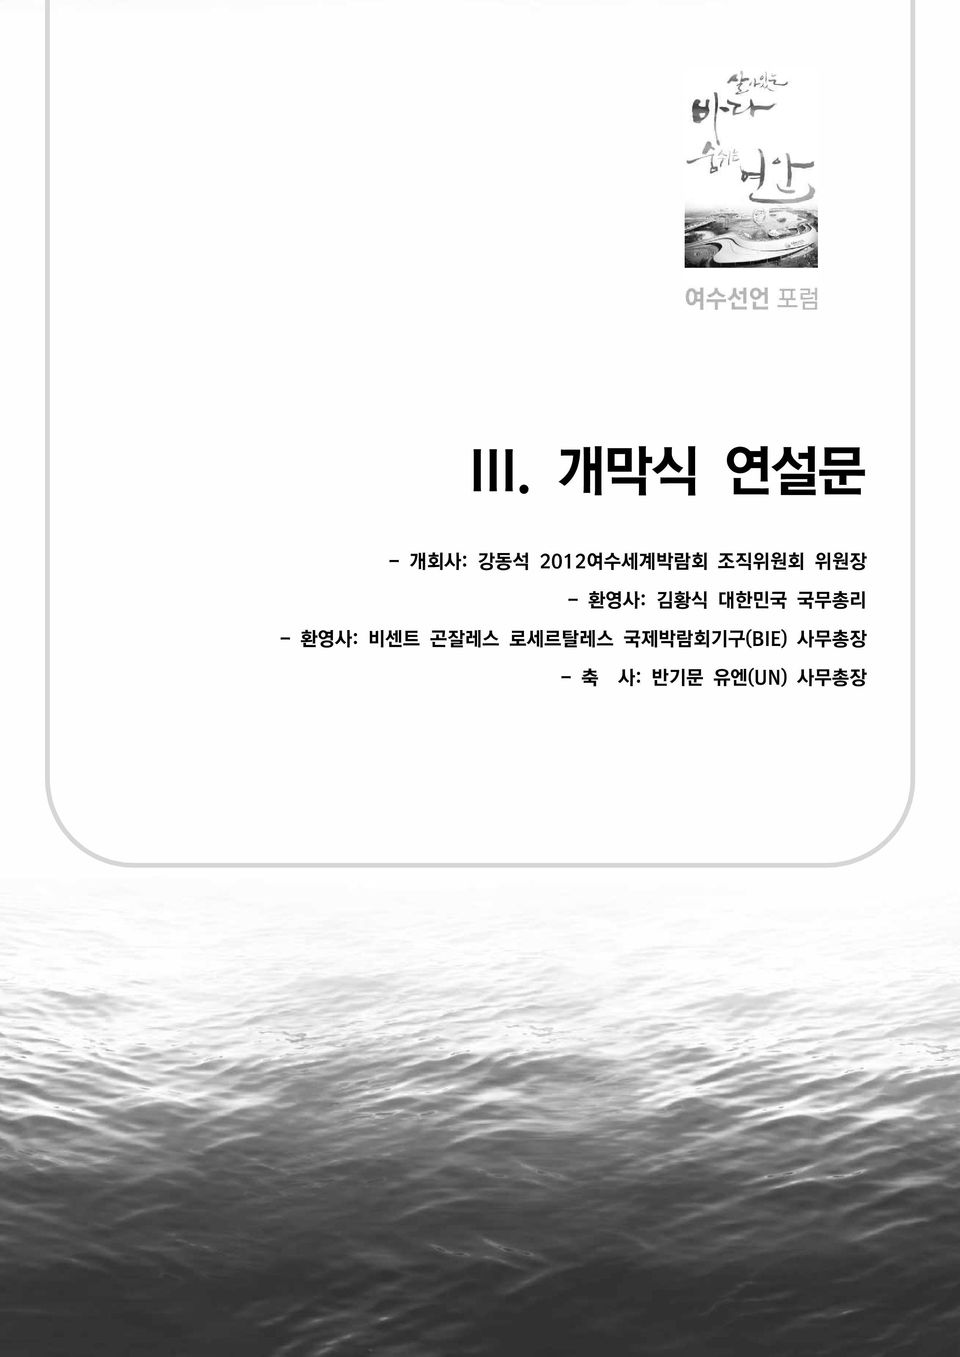 조직위원회 위원장 - 환영사: 김황식 대한민국 국무총리 -